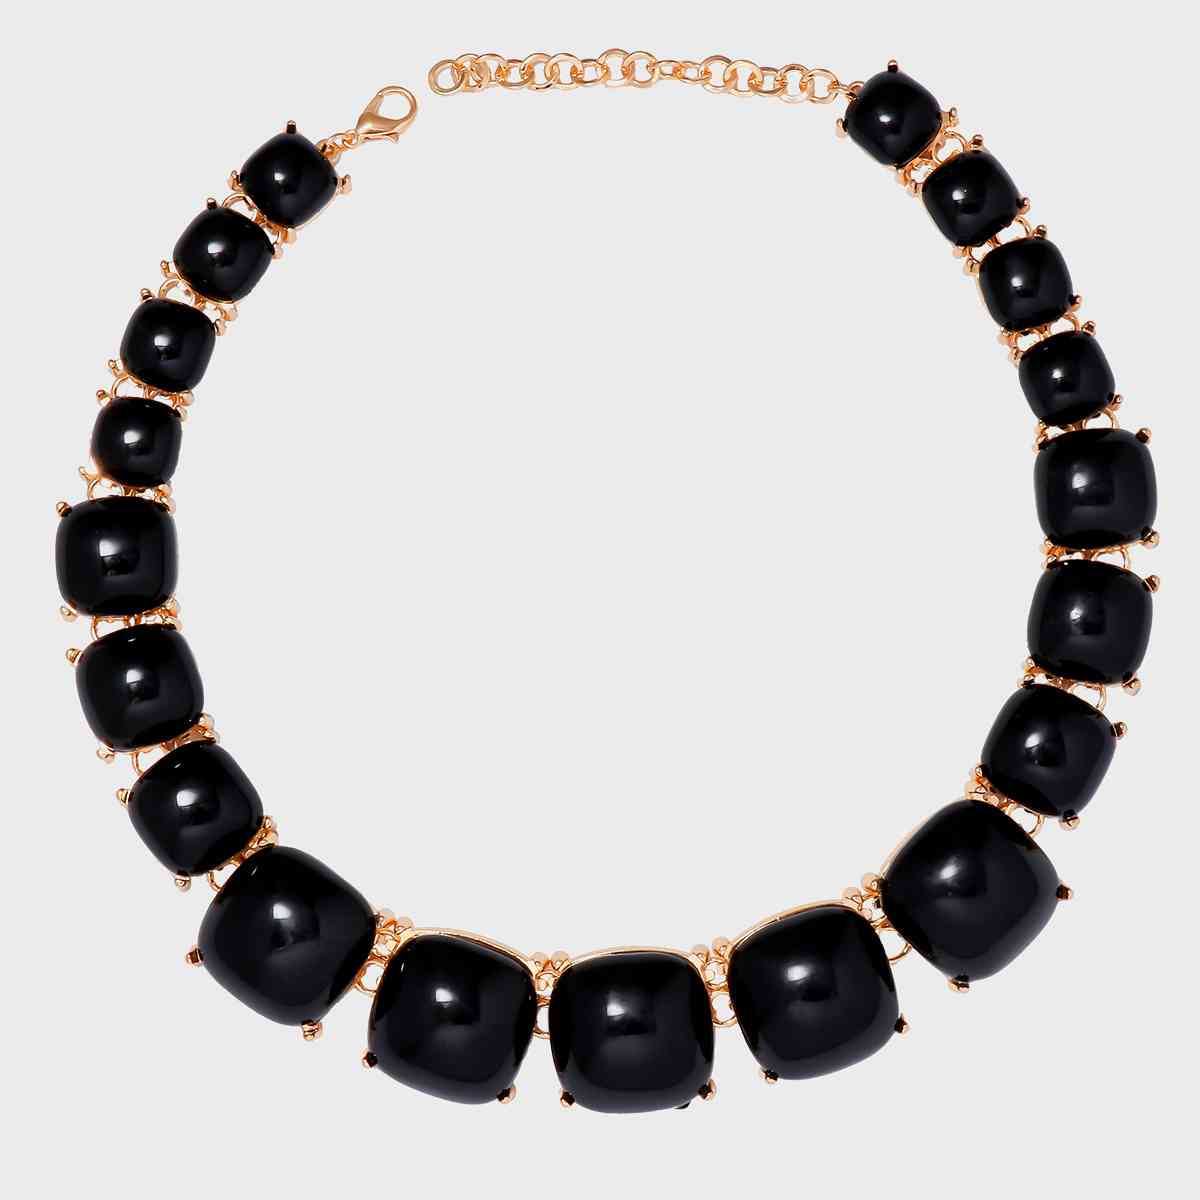 Alloy & Rhinestone Necklace Black One Size